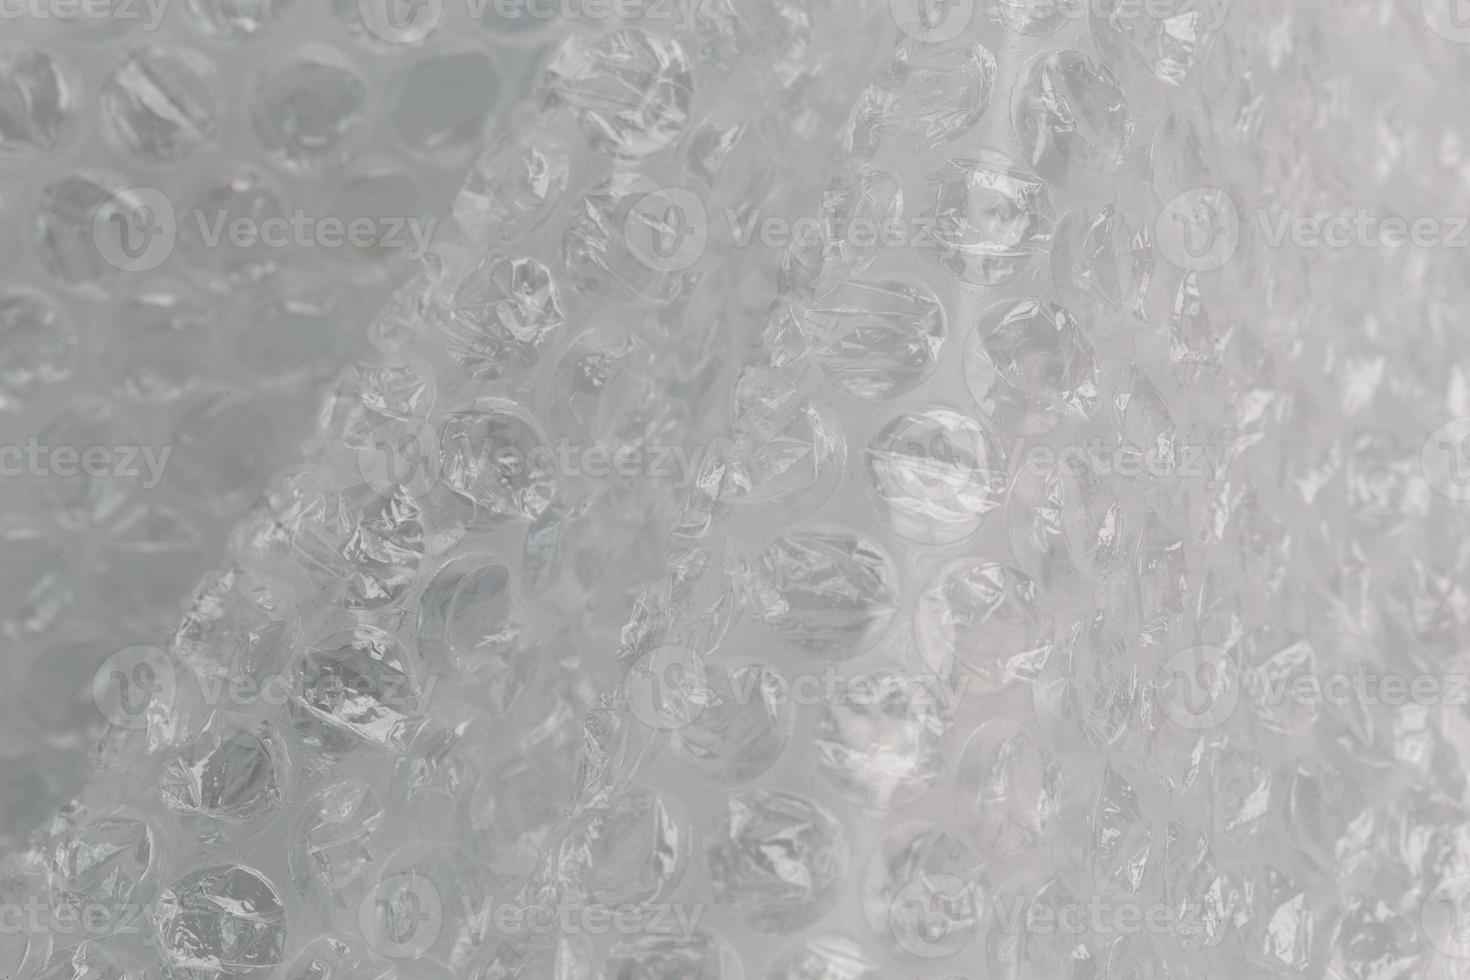 envoltório de bolha de ar amassado - fundo de close-up da vida real foto